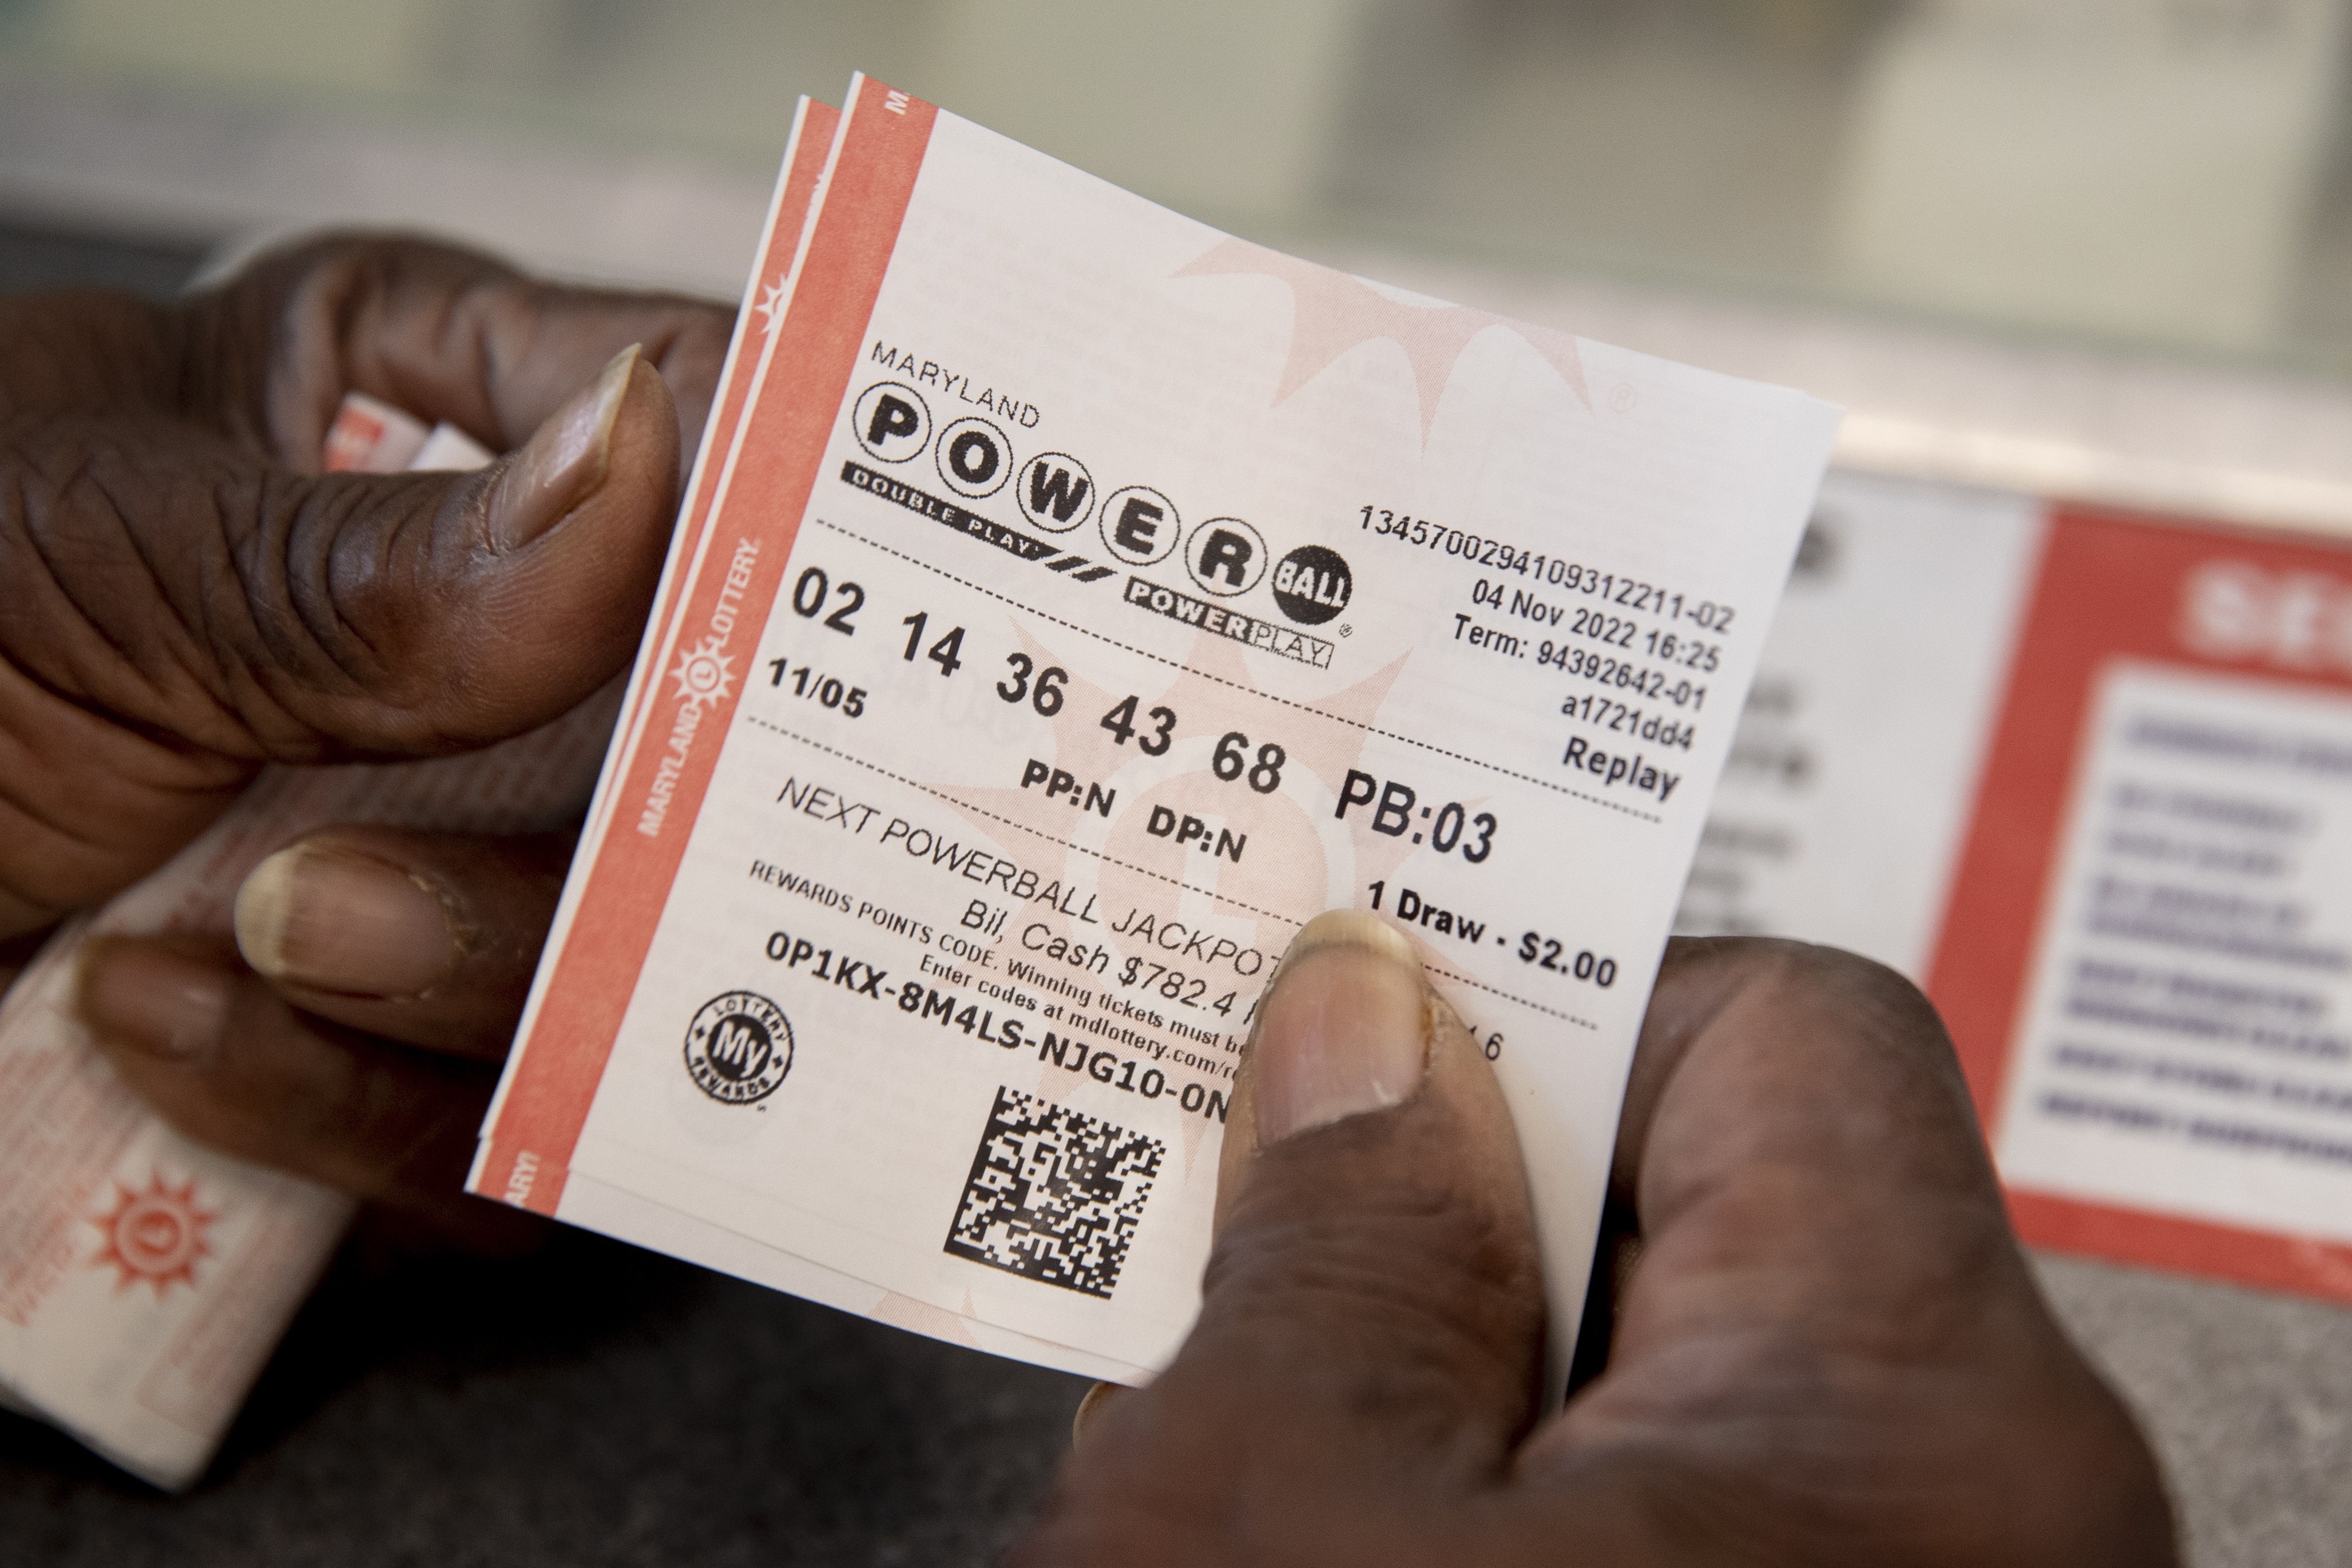 Estos son los 10 premios más grandes dados en la lotería Powerball. (Foto Prensa Libre: EFE)